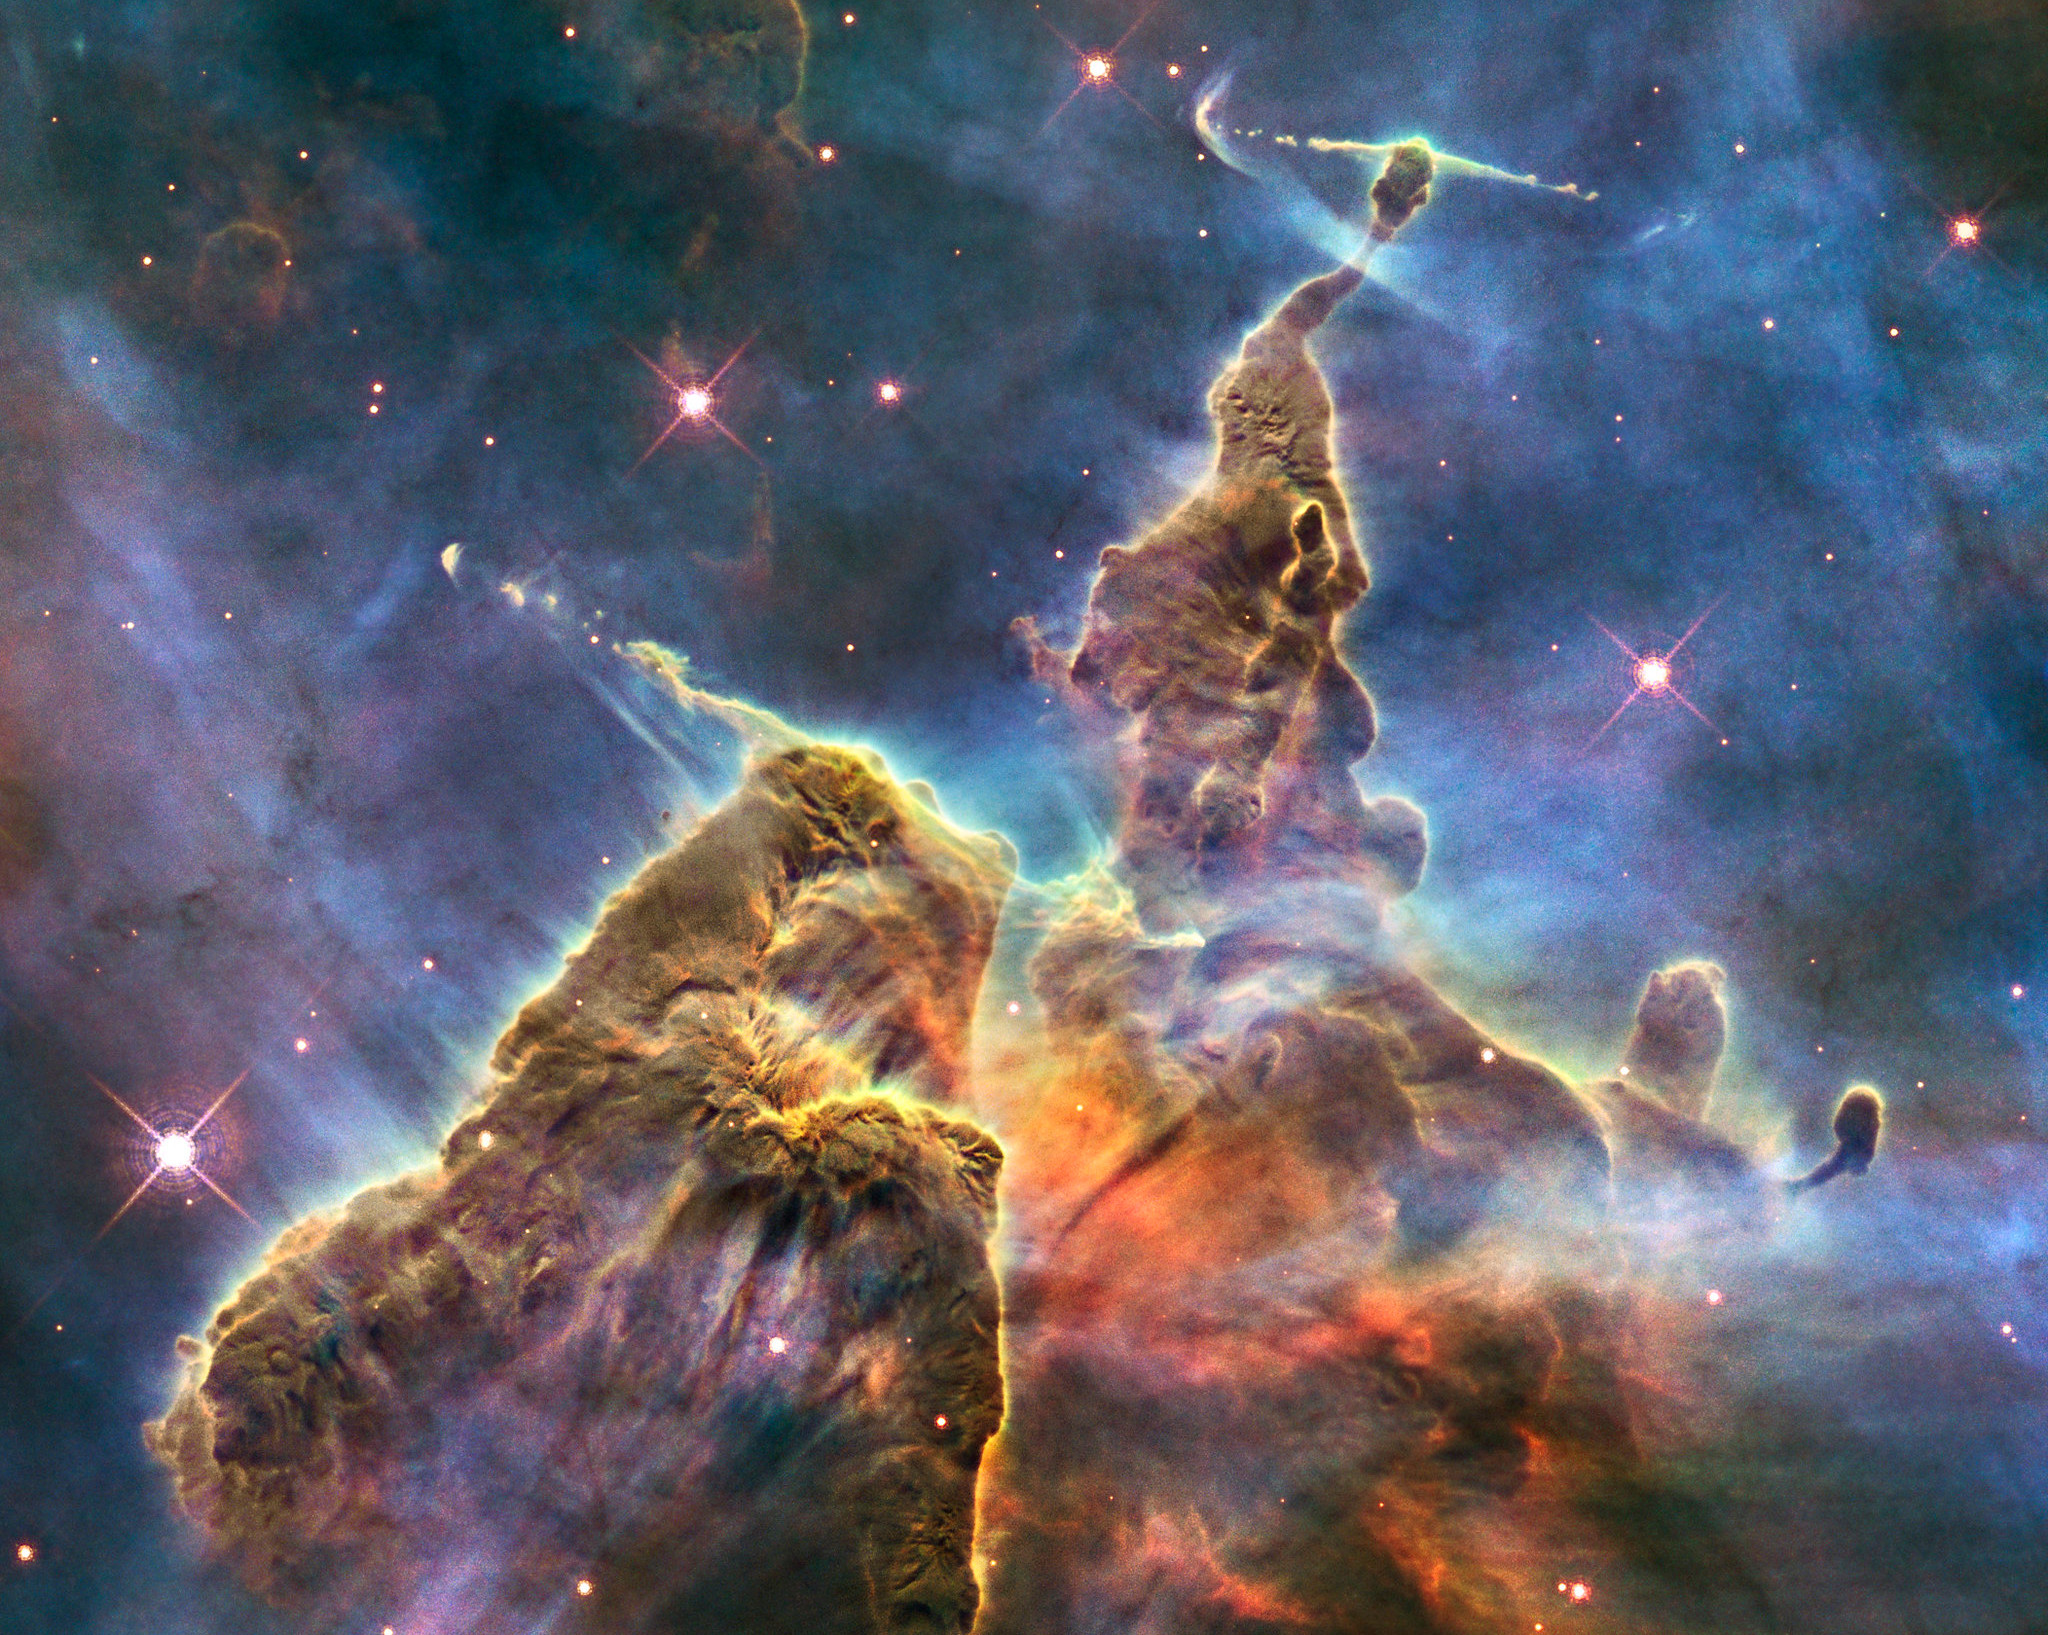 τηλεσκόπιο Hubble